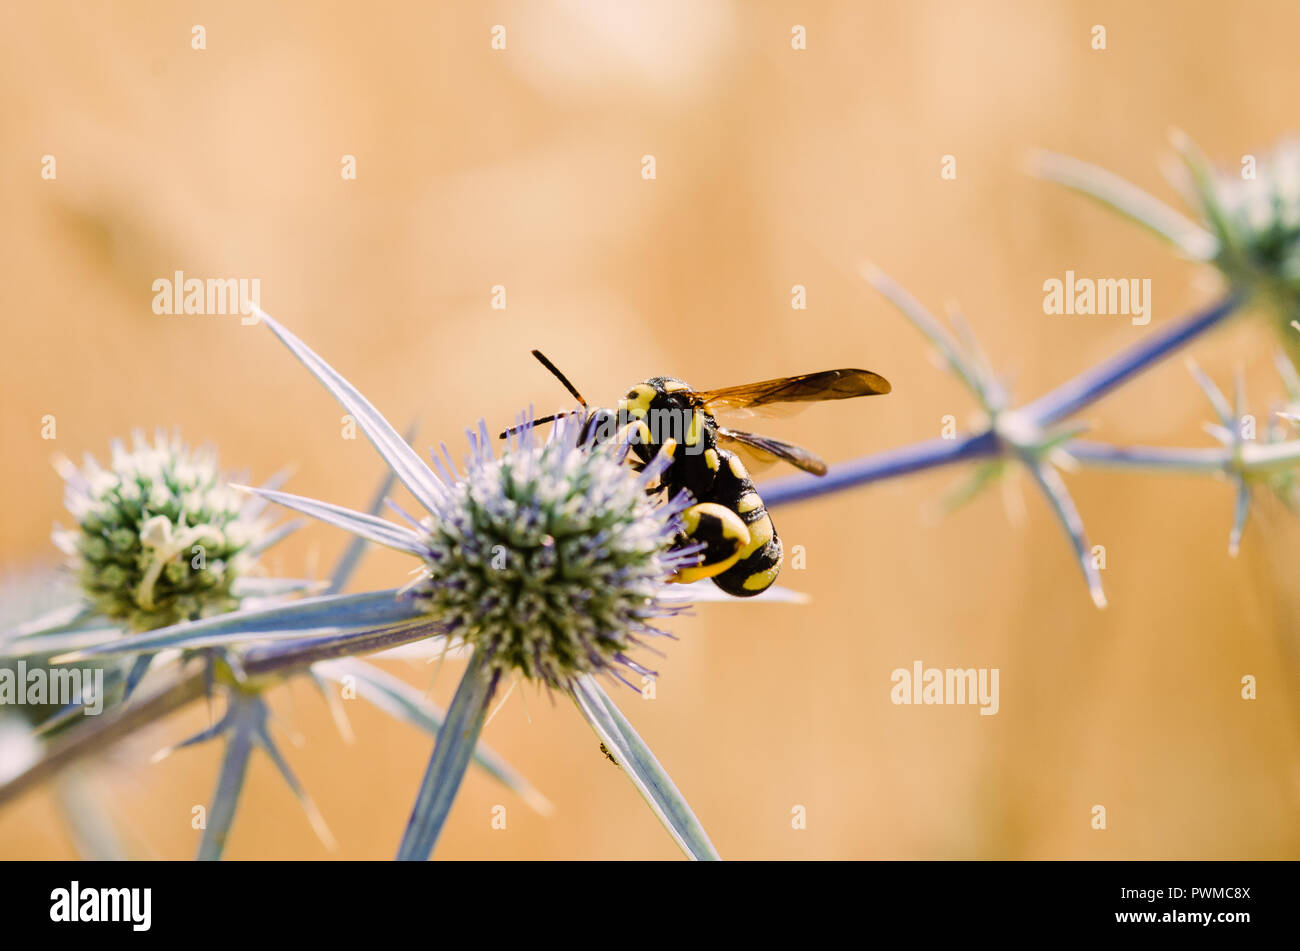 Cerrar la fotografía, amarillo naranja y negro con insectos abeja verde y flores púrpuras, fondo claro y bokeh Foto de stock